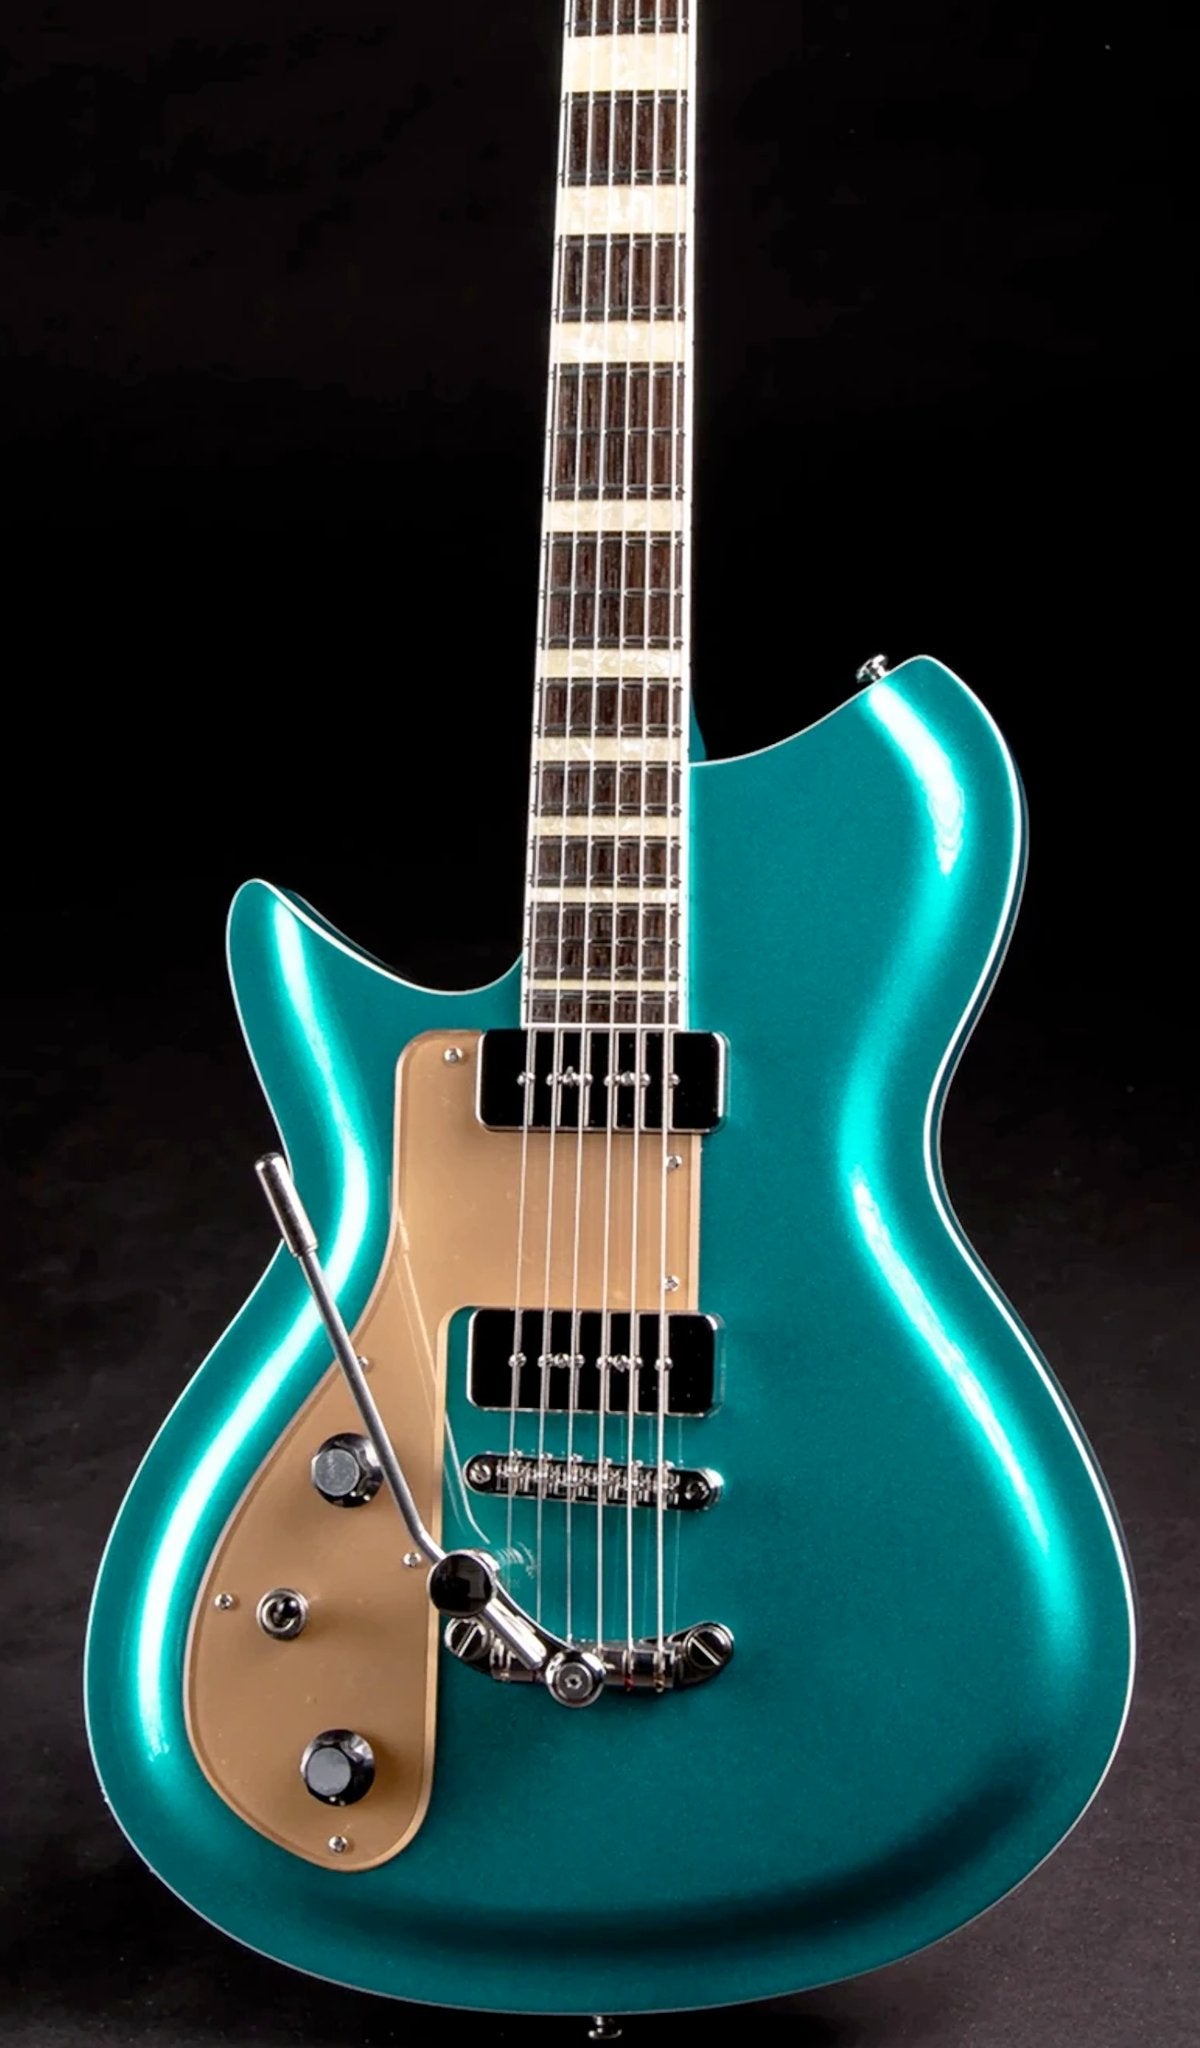 Eastwood Guitars Rivolta Combinata DLX Adriatic Blue Metallic LH